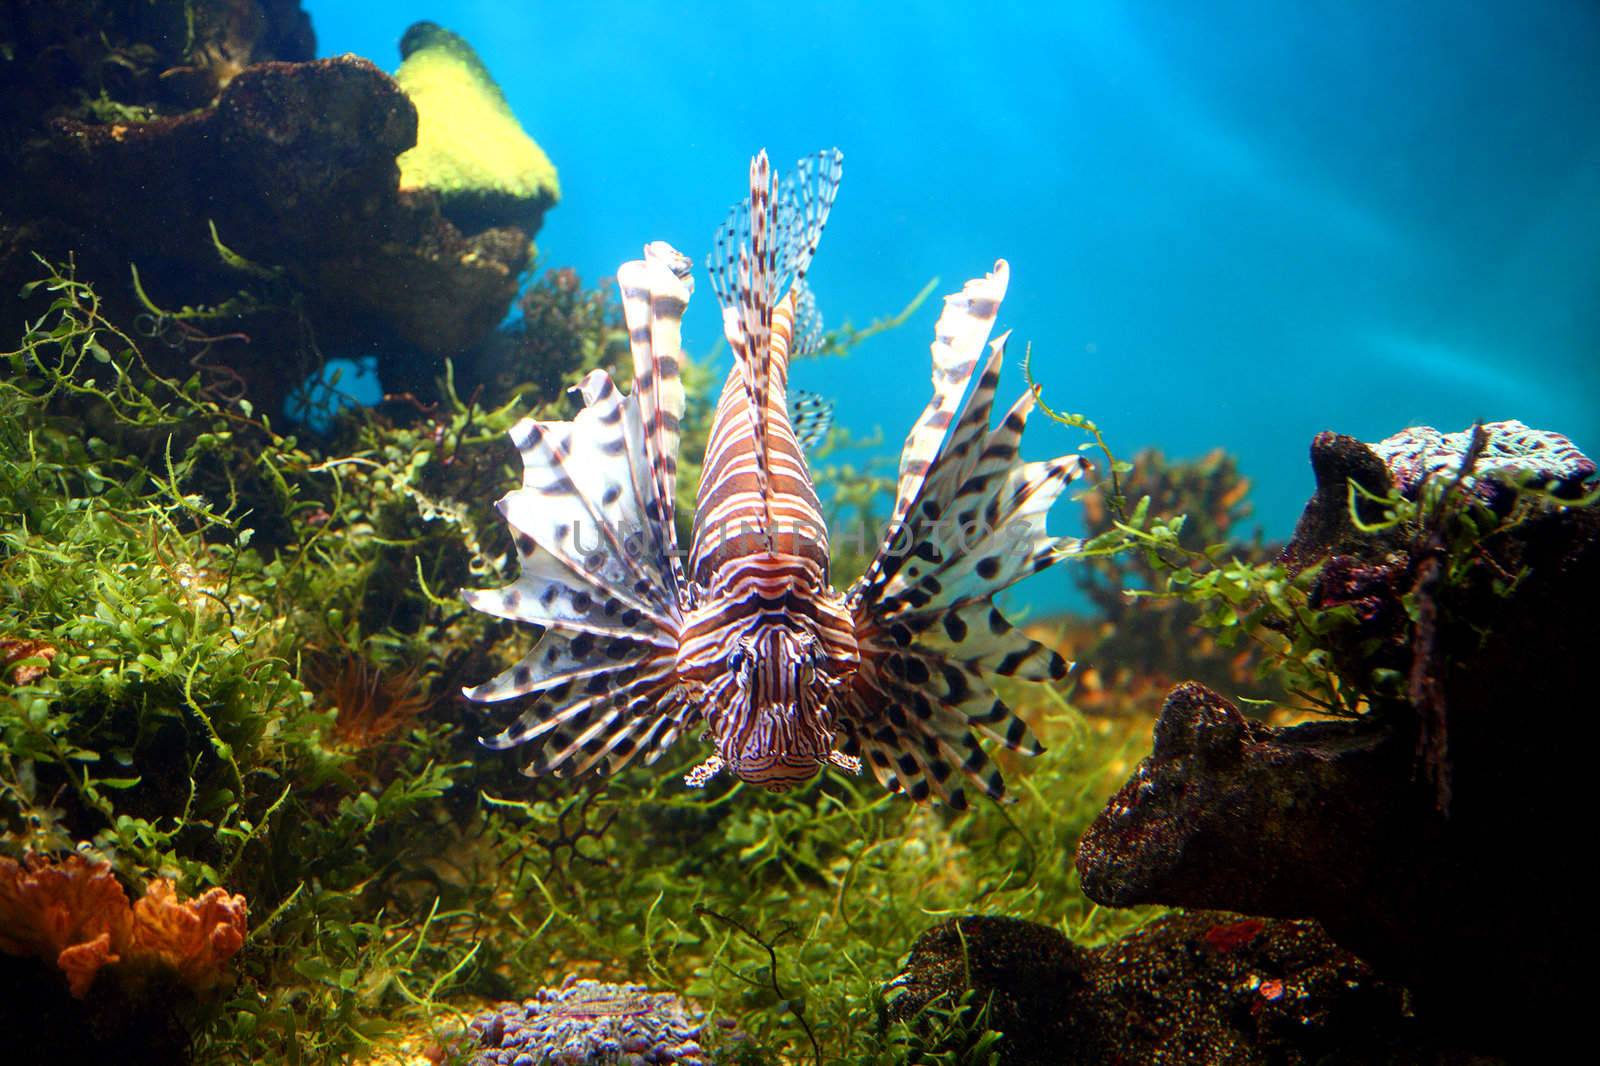 lionfish in tropical aquarium by Mikko